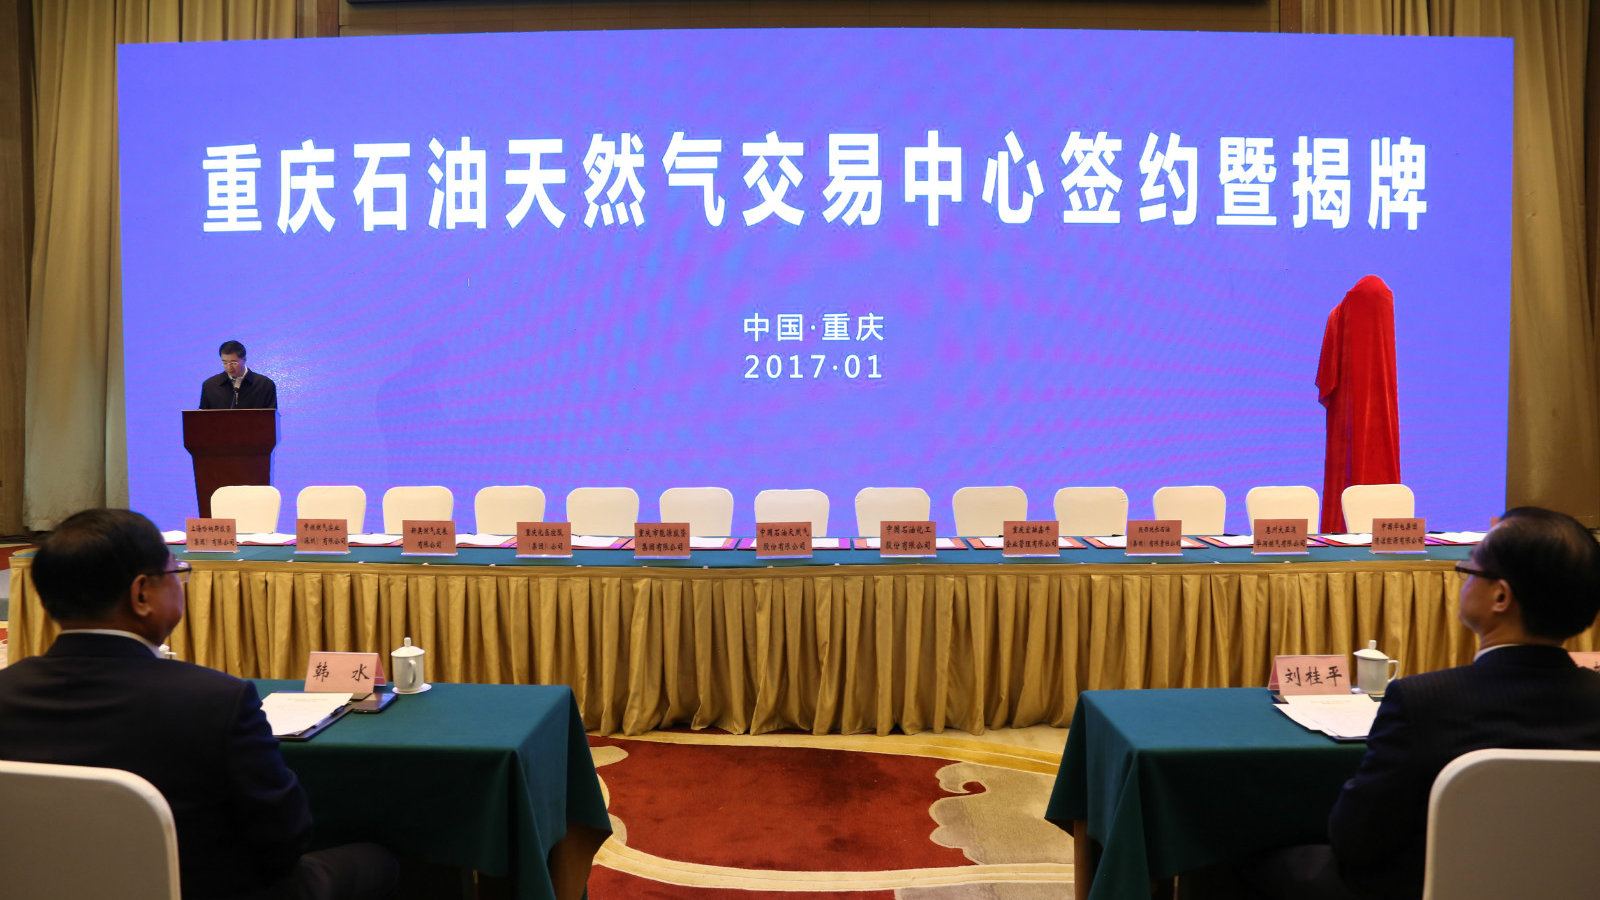 重庆石油天然气交易中心正式挂牌成立 哈纳斯集团作为股东受邀参加